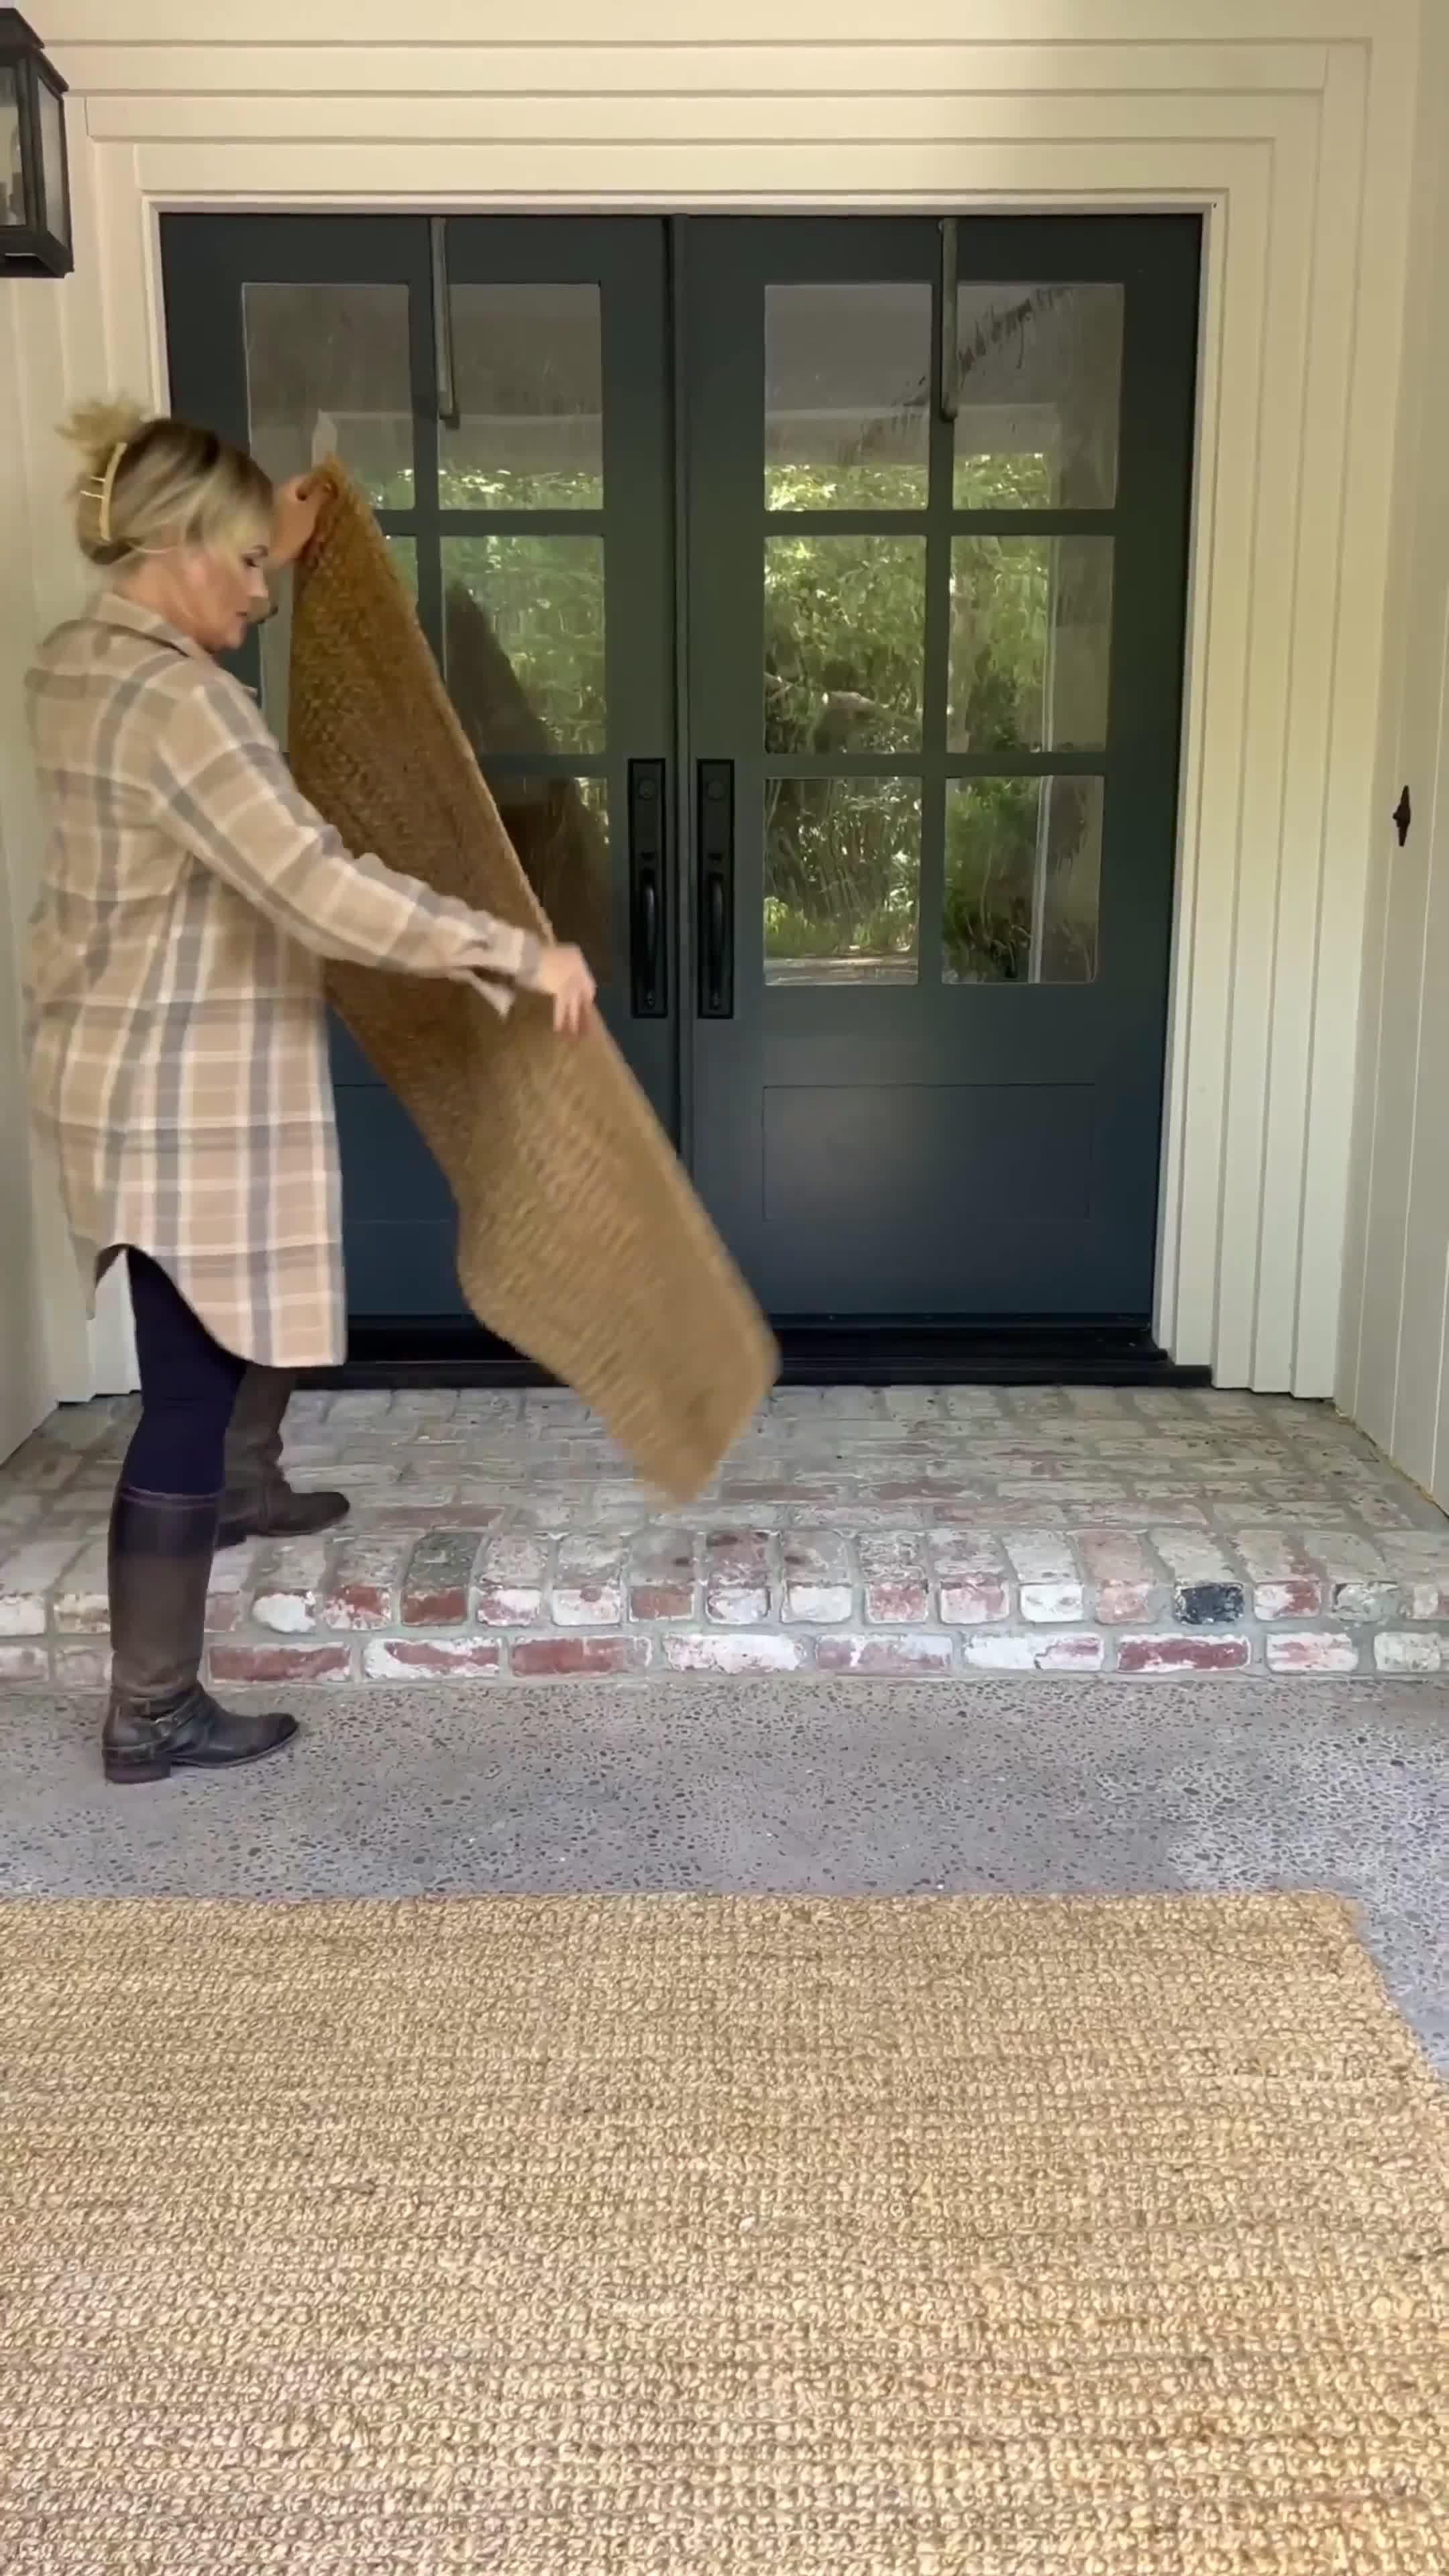 Hello Harvest Coir Doormat, 29.5in x 17.75in